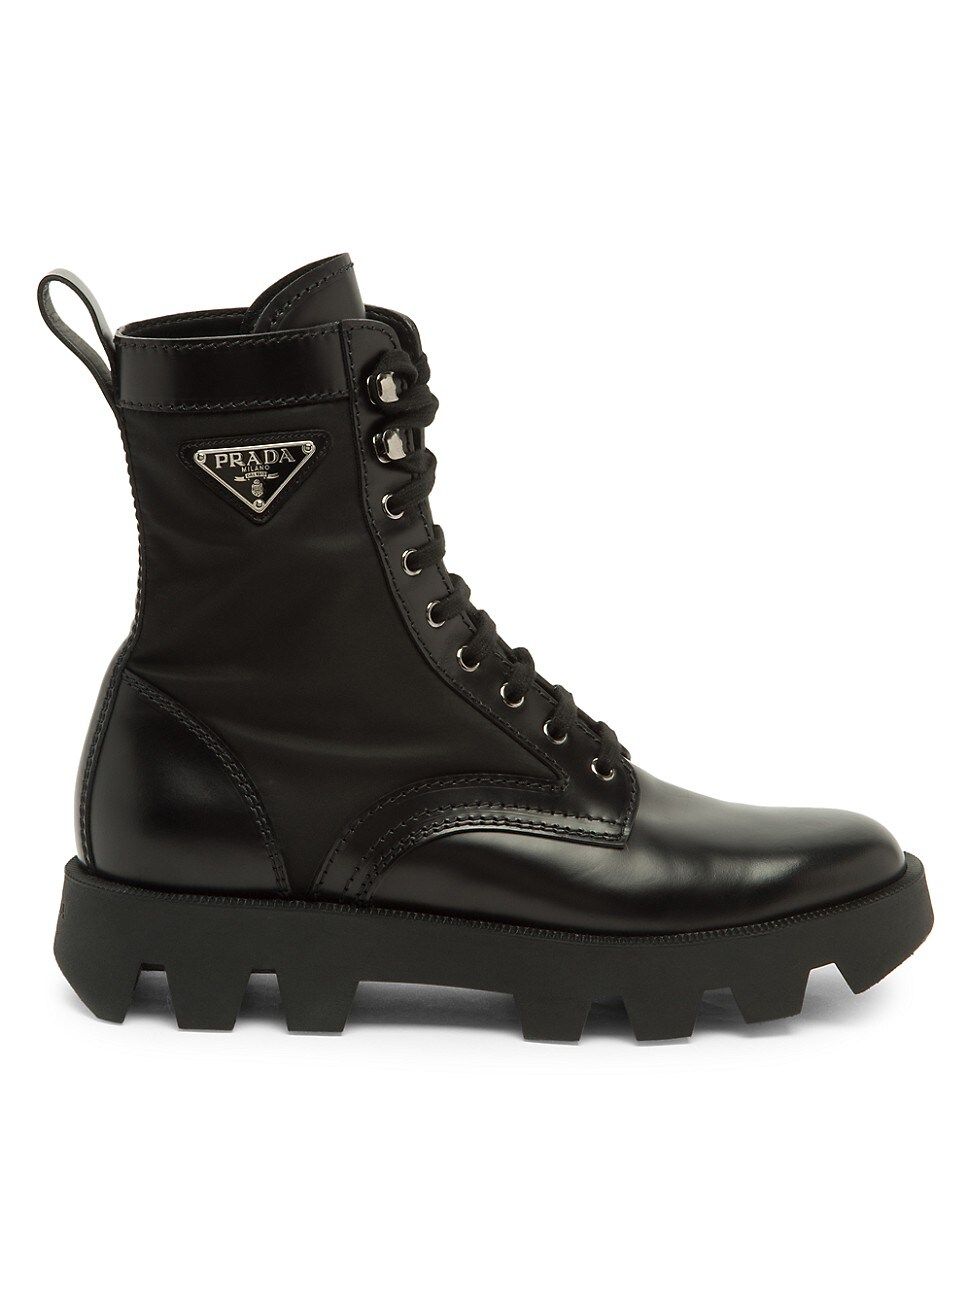 Prada Men's Brushed Nylon Combat Boots - Nero - Size 11 UK (12 US) | Saks Fifth Avenue